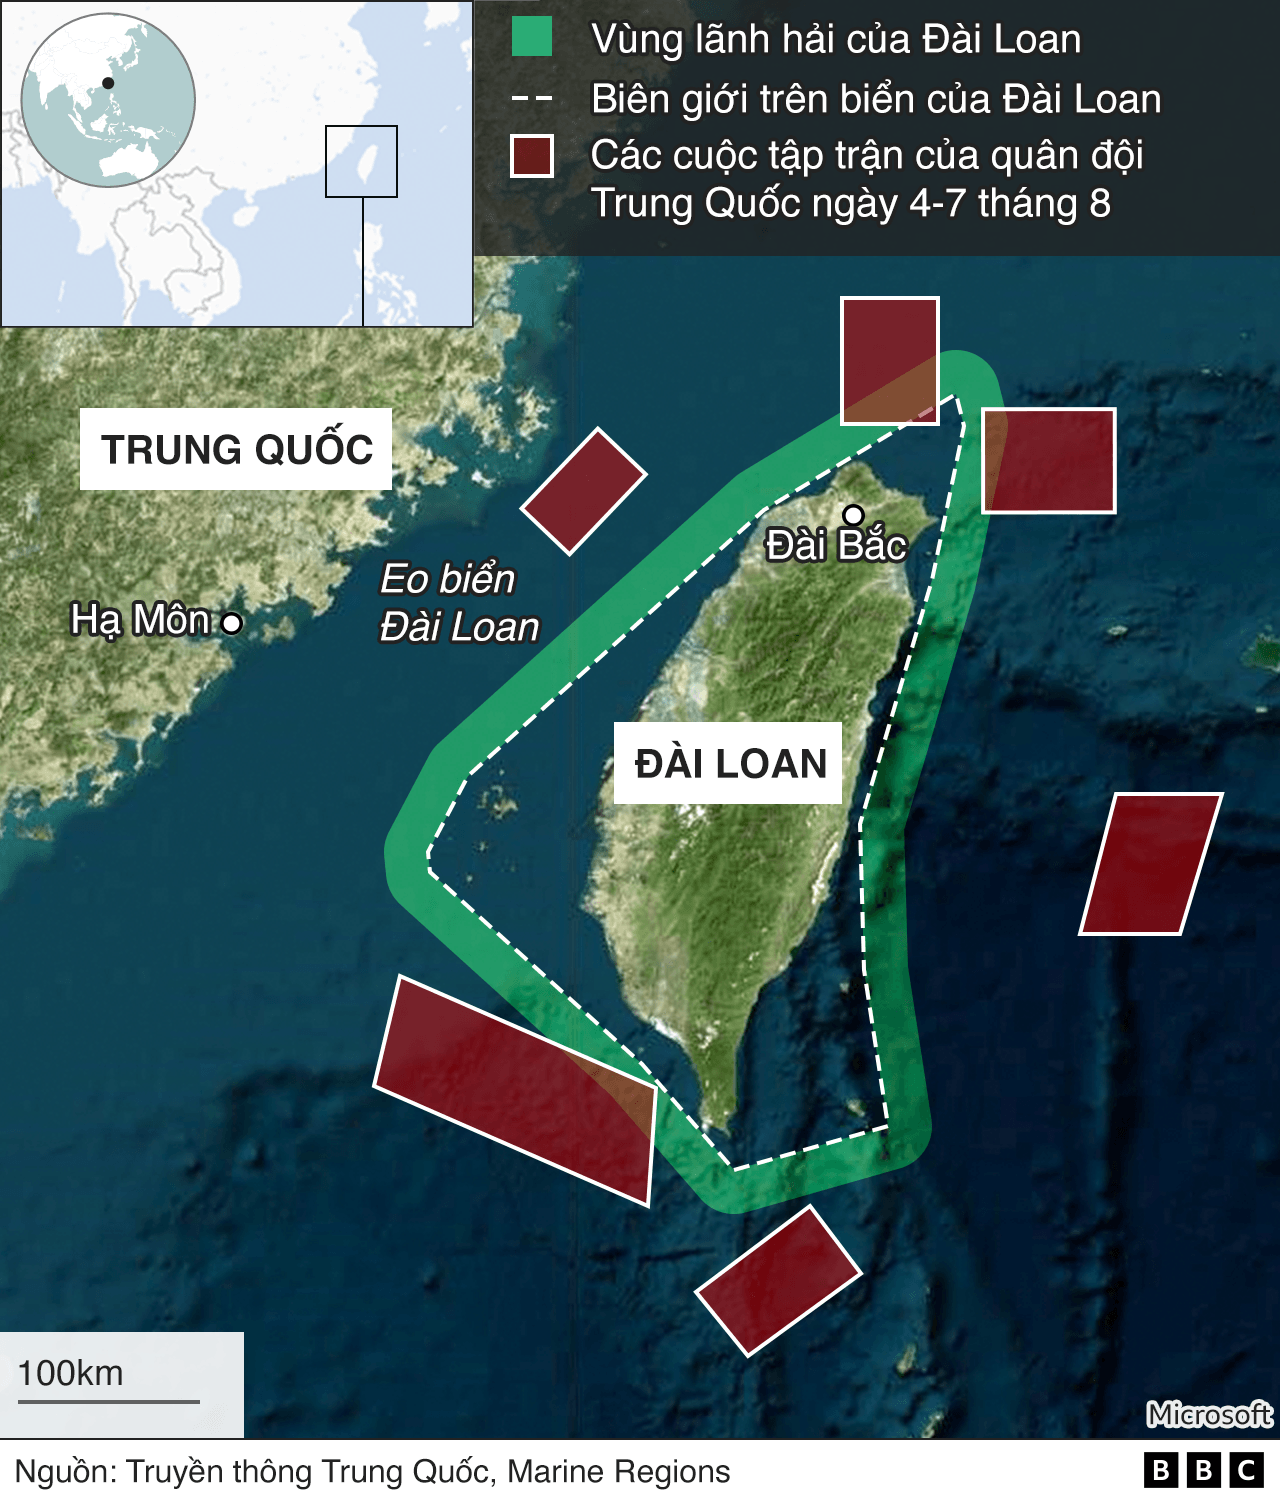 Với tập trận quanh Đài Loan hiện nay, bản đồ trở thành công cụ cần thiết để theo dõi và xác định rõ ràng những hoạt động của quân đội. Nó cũng giúp cho người dân có thể biết được những khu vực cần tránh để giữ an toàn cho mình.